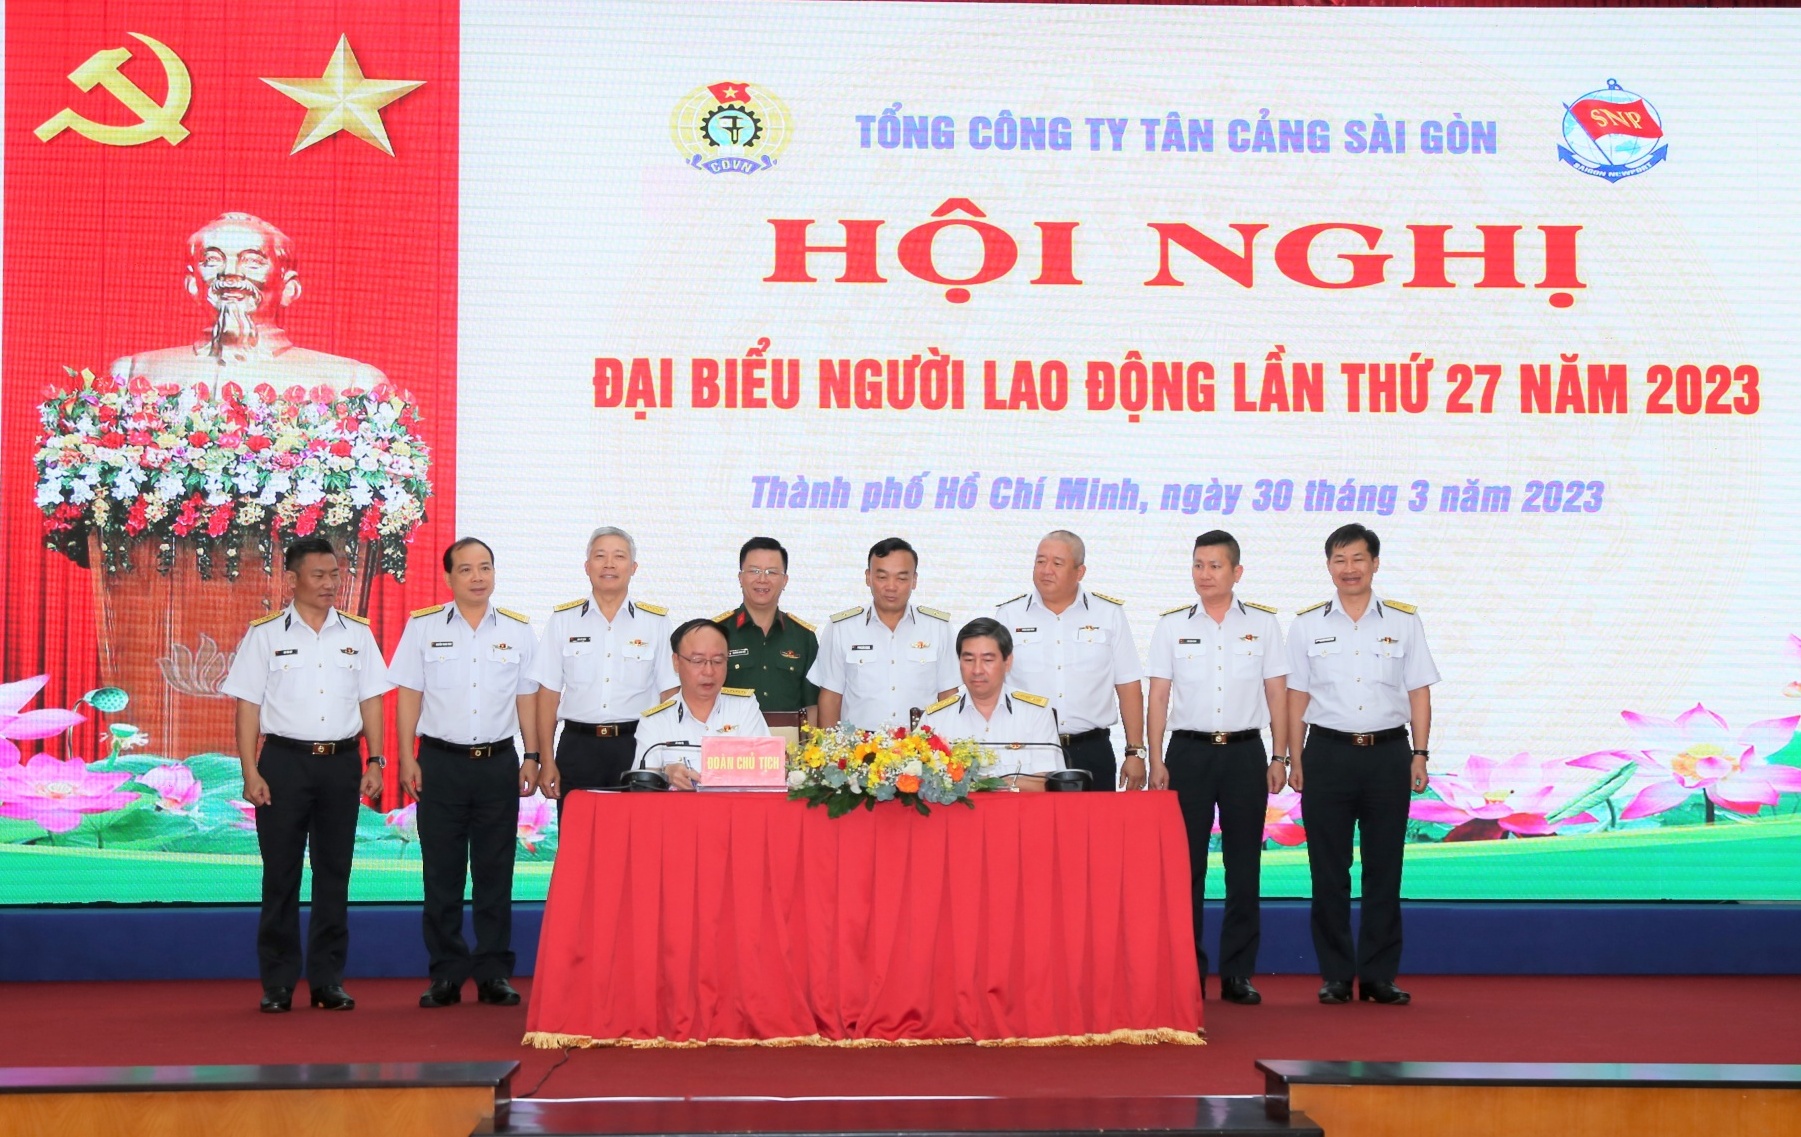 Tổng Công ty Tân Cảng Sài Gòn tổ chức Hội nghị đại biểu người lao động năm 2023